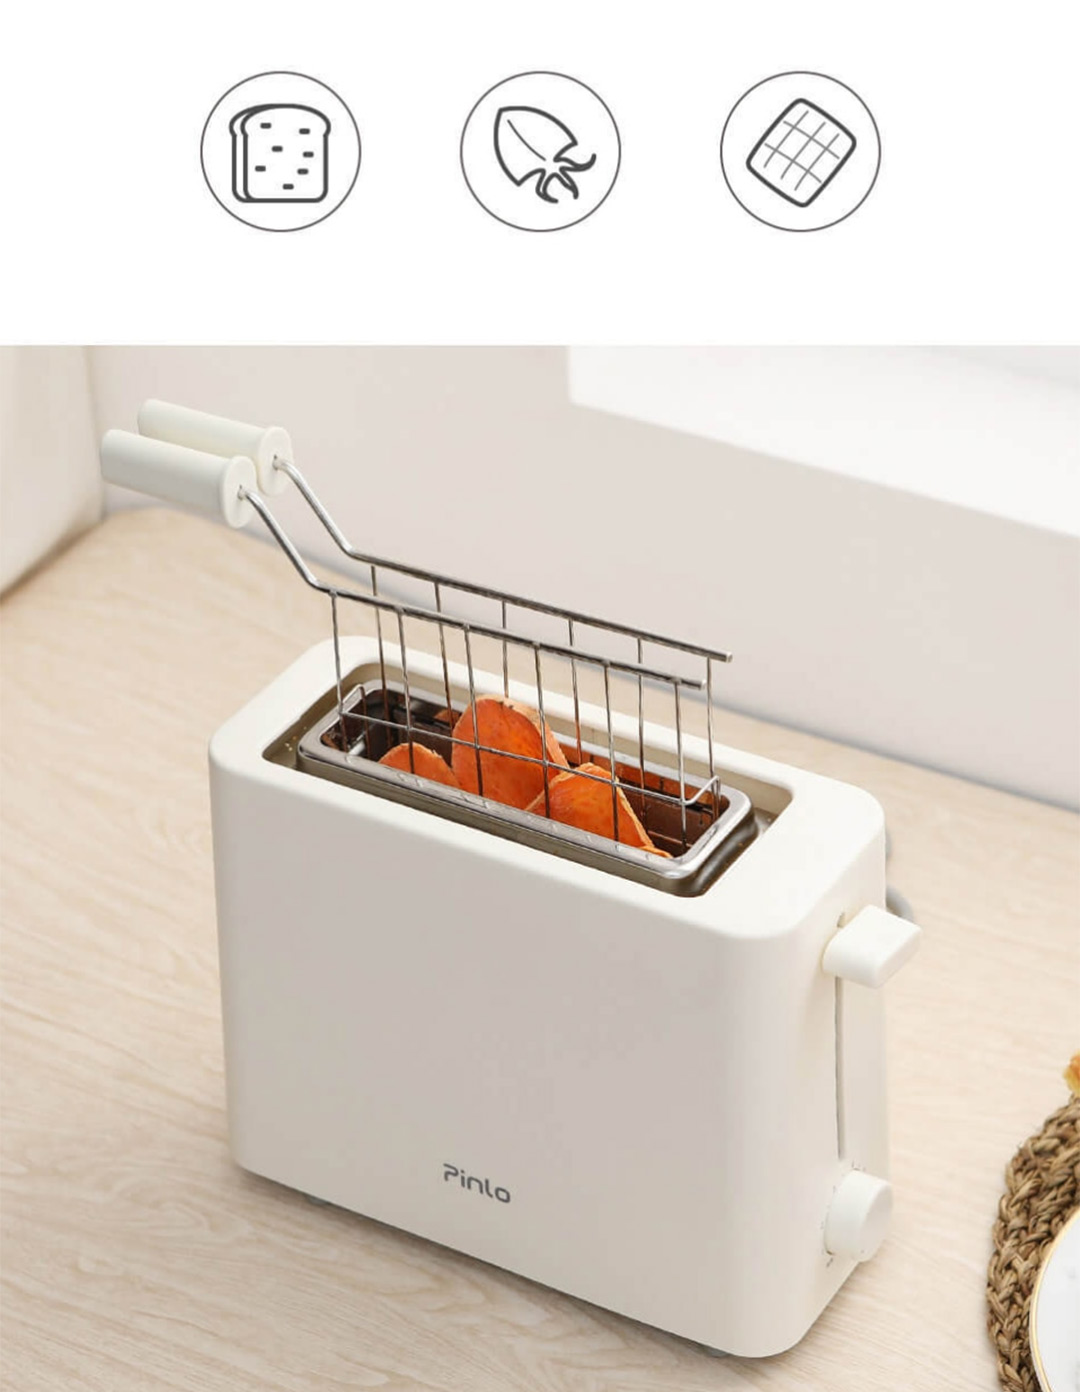 Xiaomi Pinlo Mini Toaster